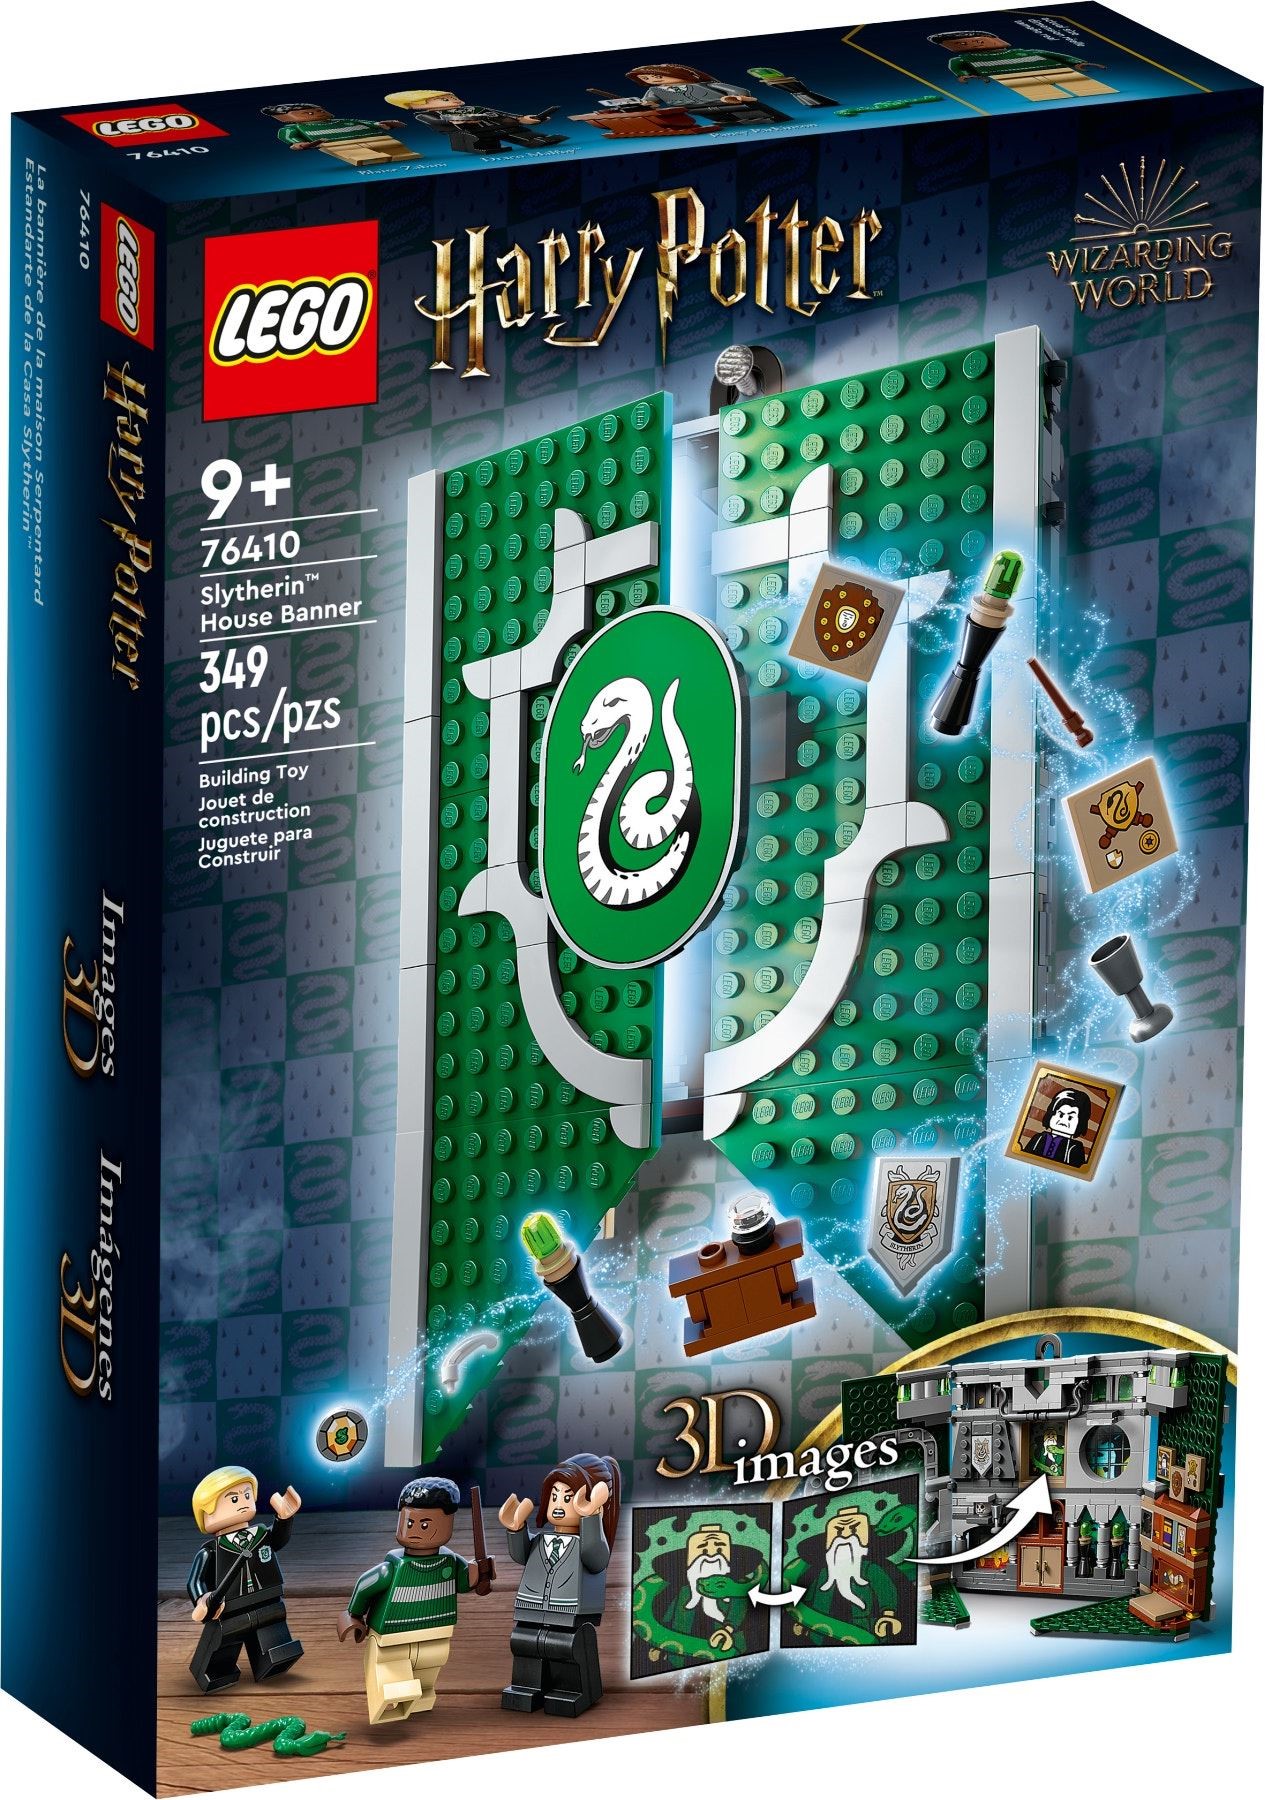 Ogni set LEGO Harry Potter andrà in pensione nel 2023 e oltre